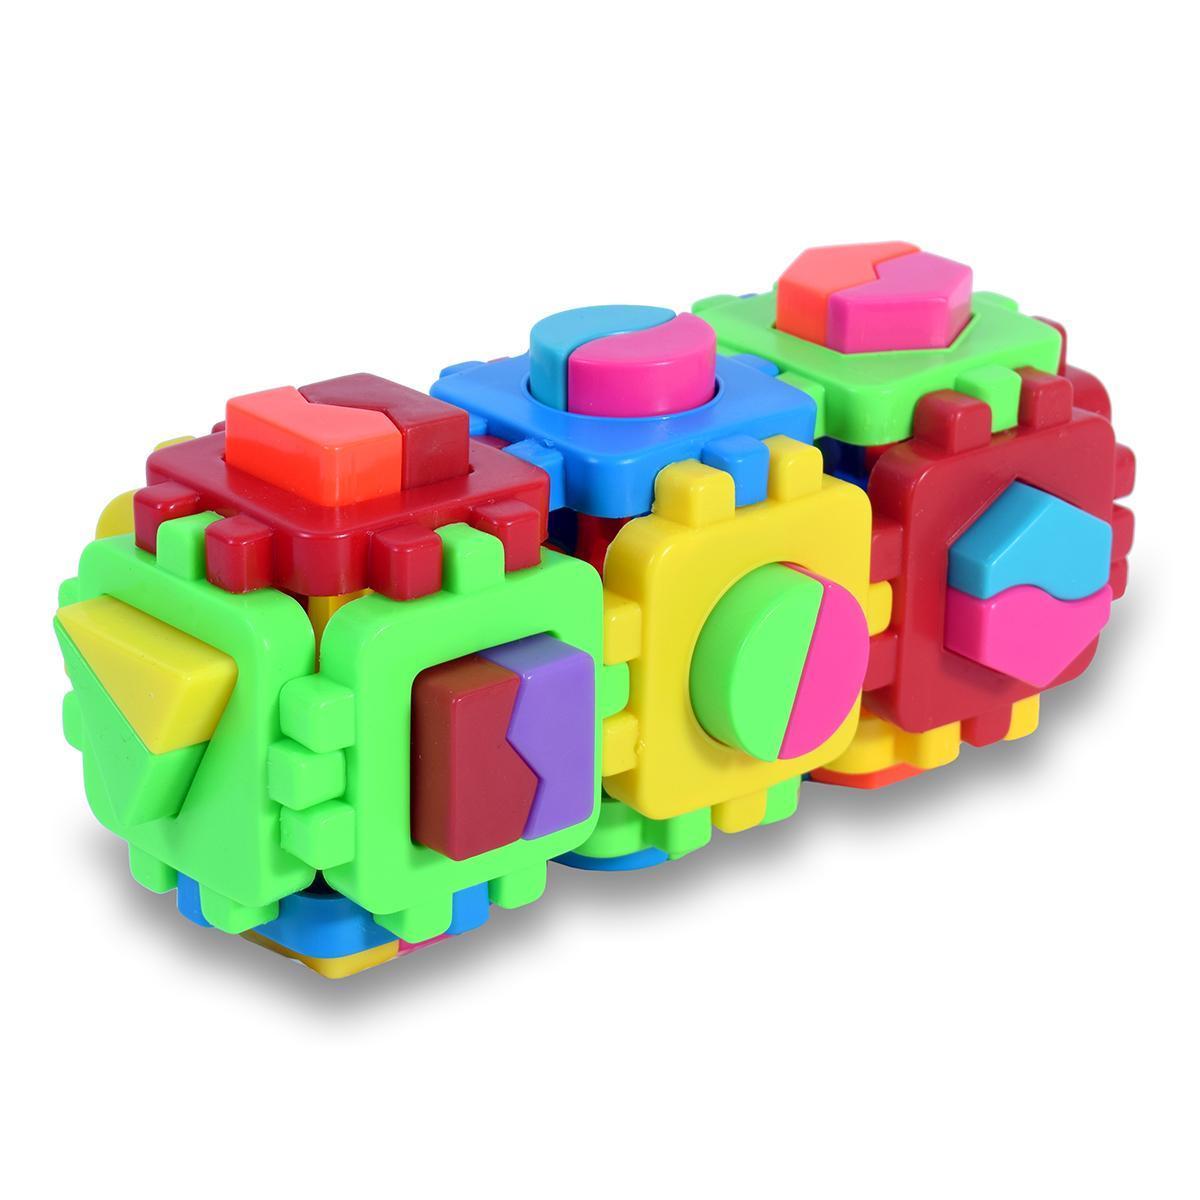 Пластмассовый игрушечный набор Геометрические фигуры 42 (24*10*11 см), сетка 